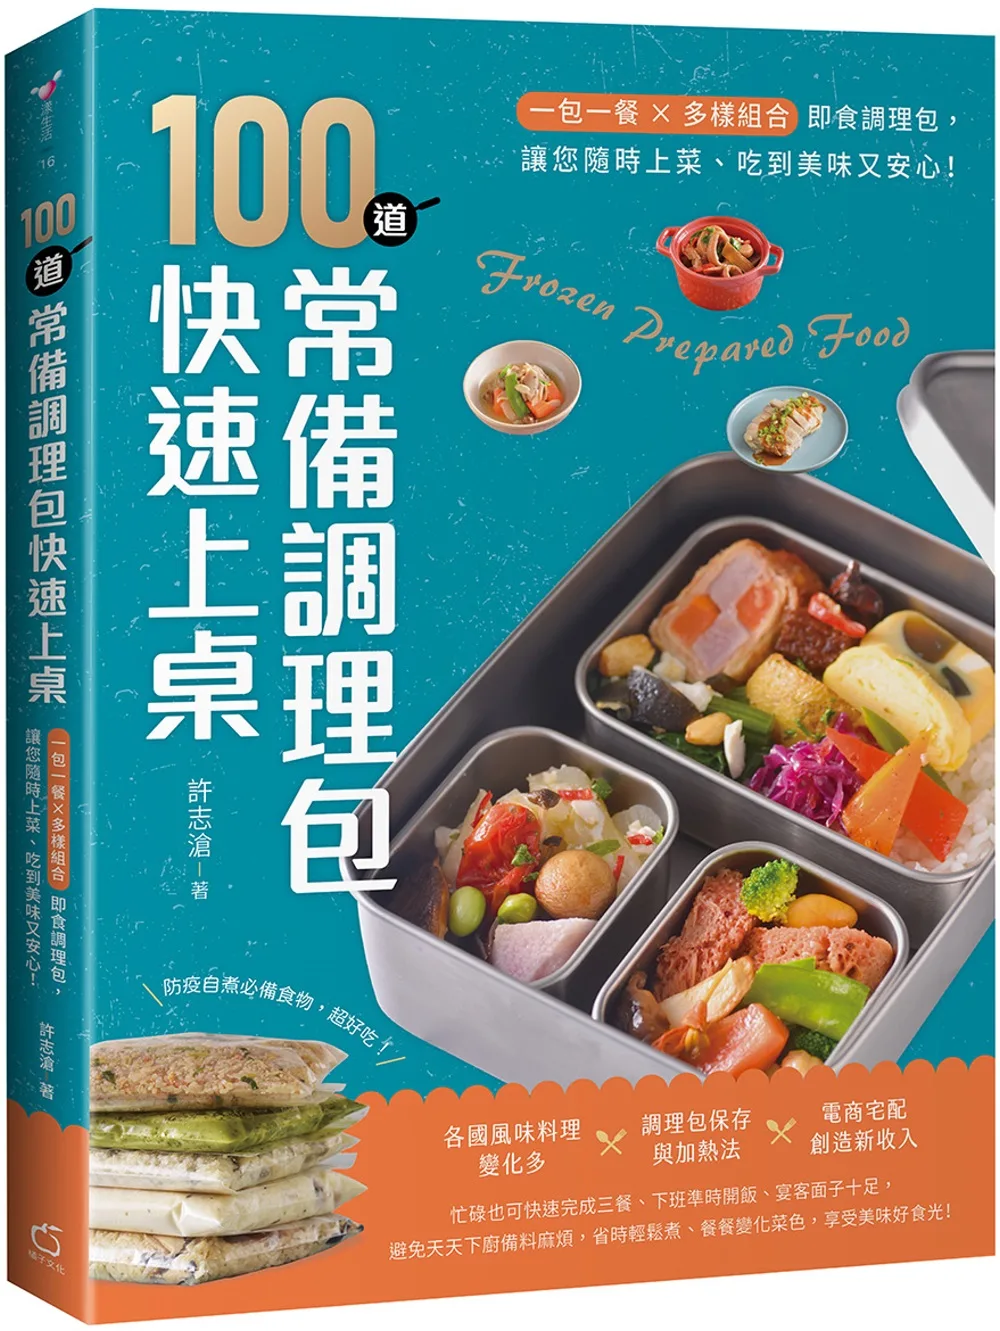 100道常備調理包快速上桌：一包一餐X多樣組合即食調理包，讓您隨時上菜、吃到美味又安心！